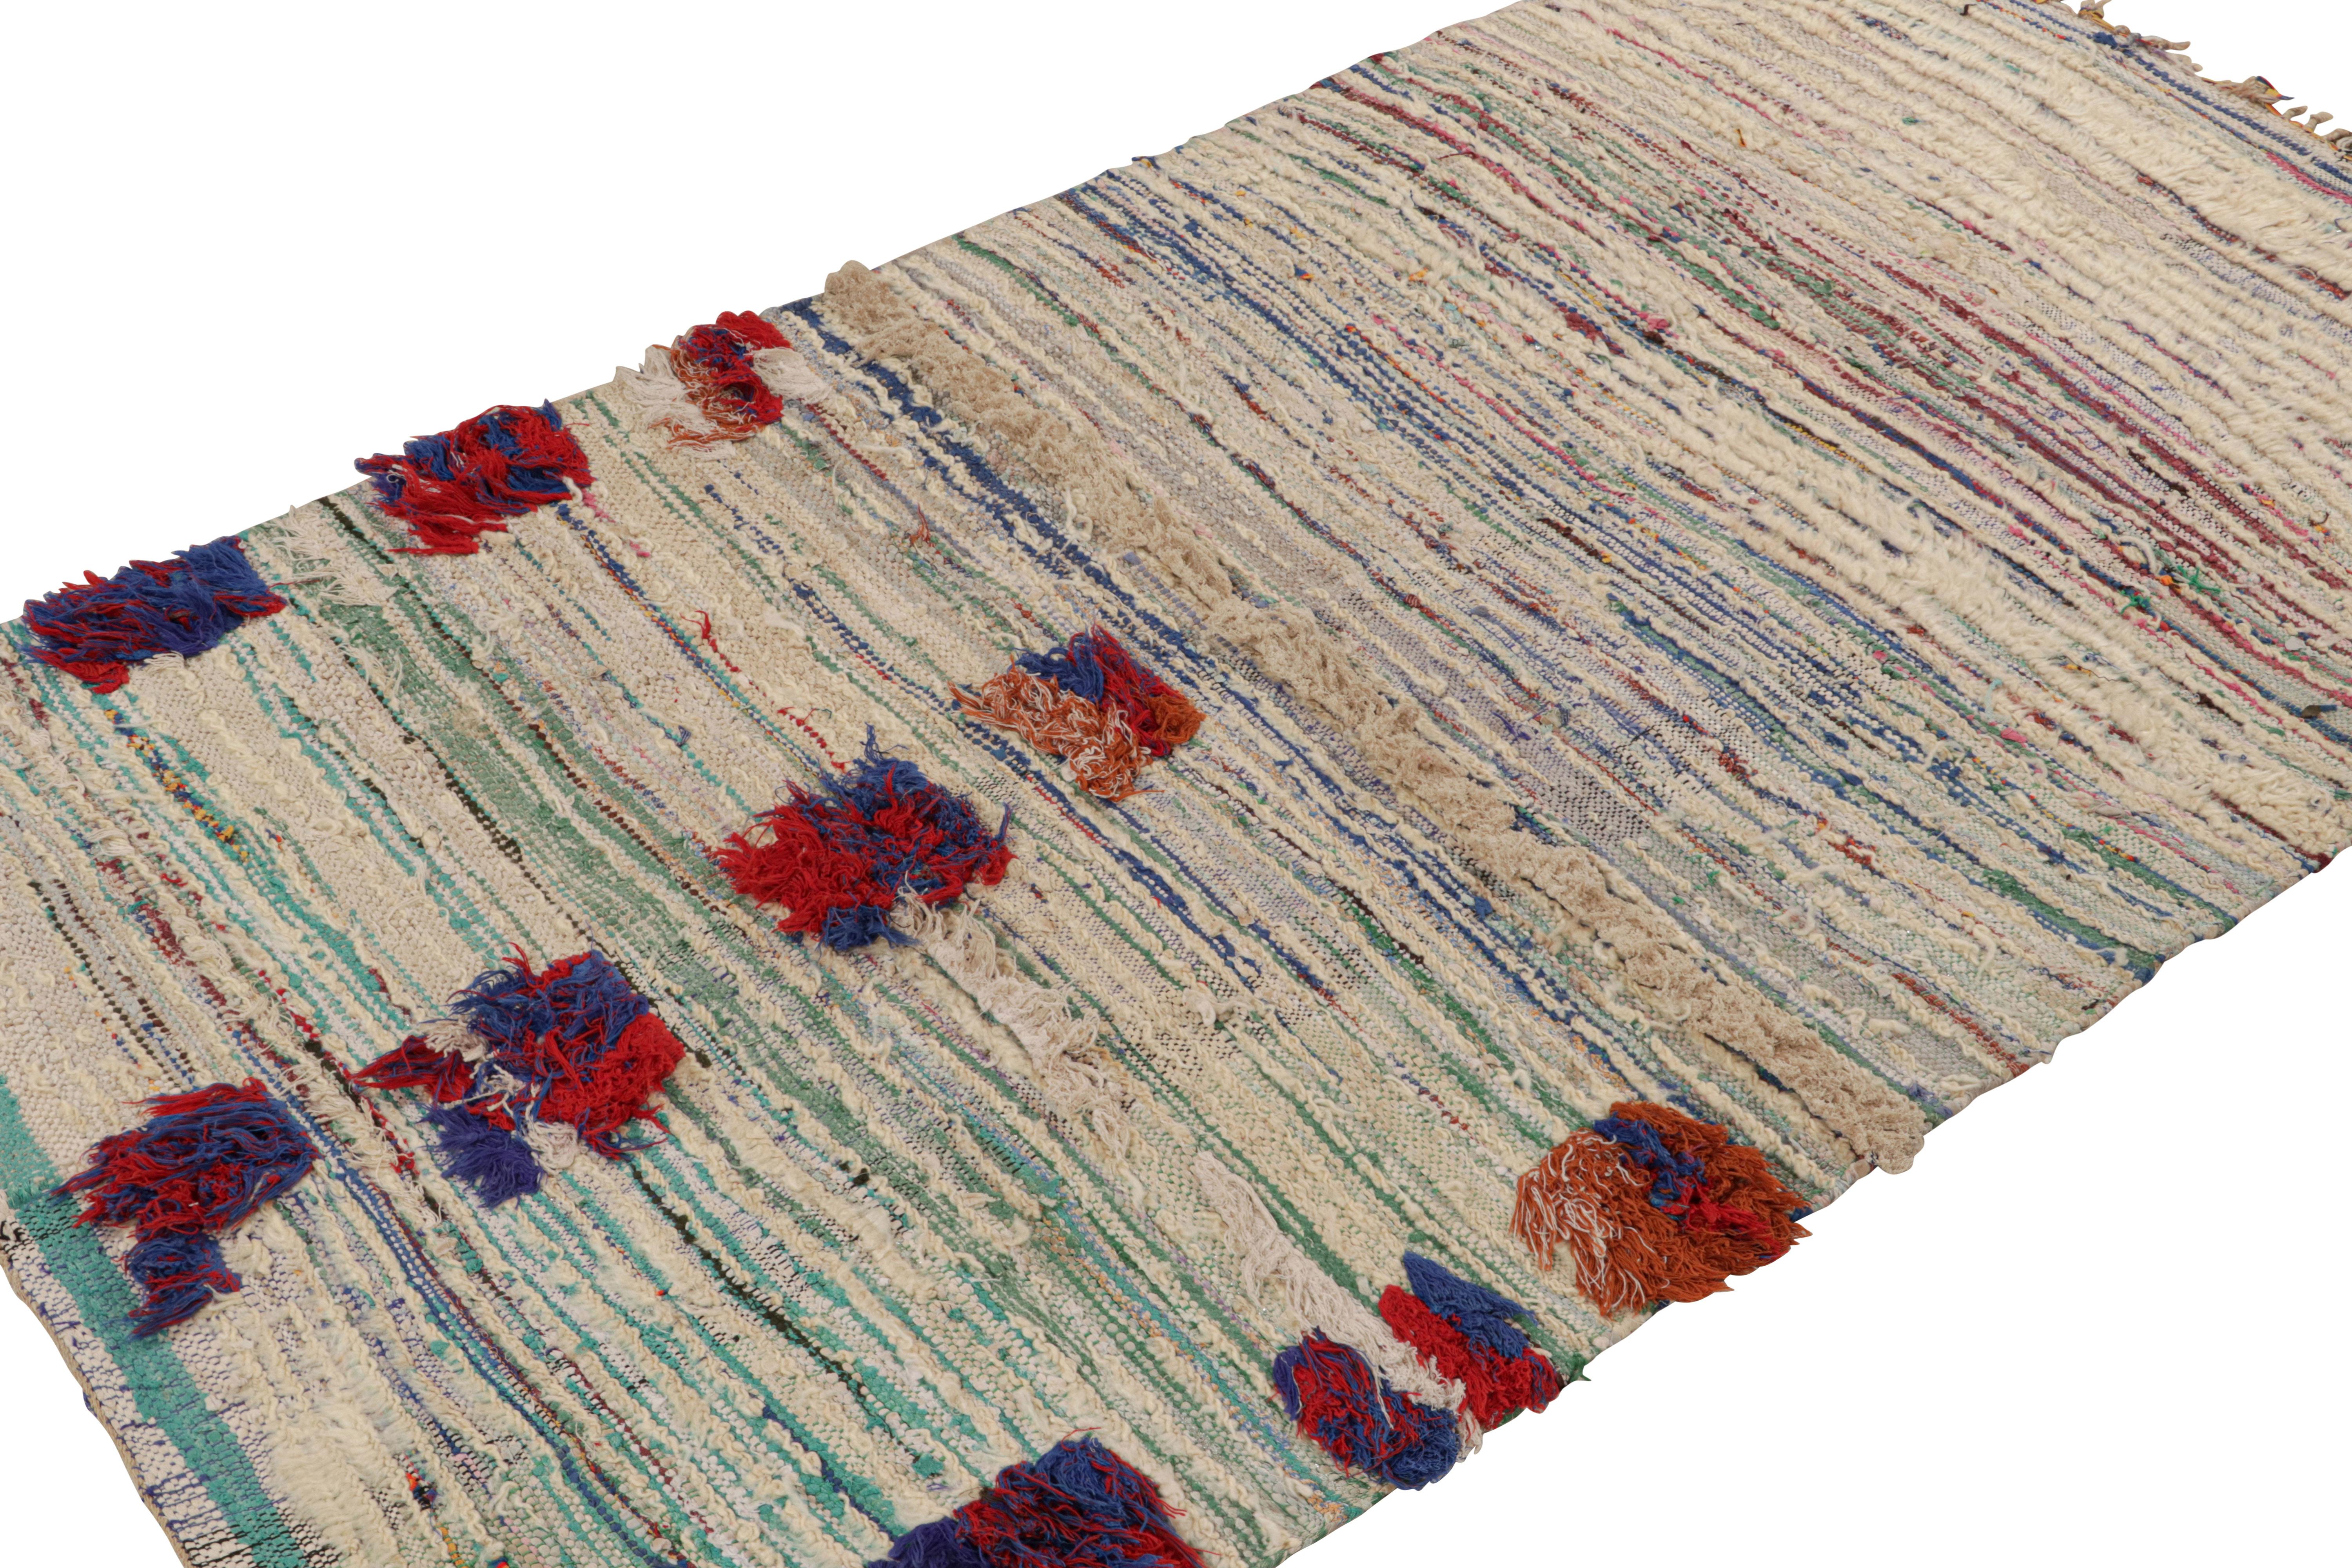 Dieser handgeknüpfte Wollteppich (ca. 1950-1960), 4x7, mit polychromen, geometrischen Streifen, stammt vom Azilal-Stamm und ist ein marokkanischer Vintage-Teppich.  

Über das Design: 

Dieser Teppich ist ein Beispiel für die verspielte, leuchtende